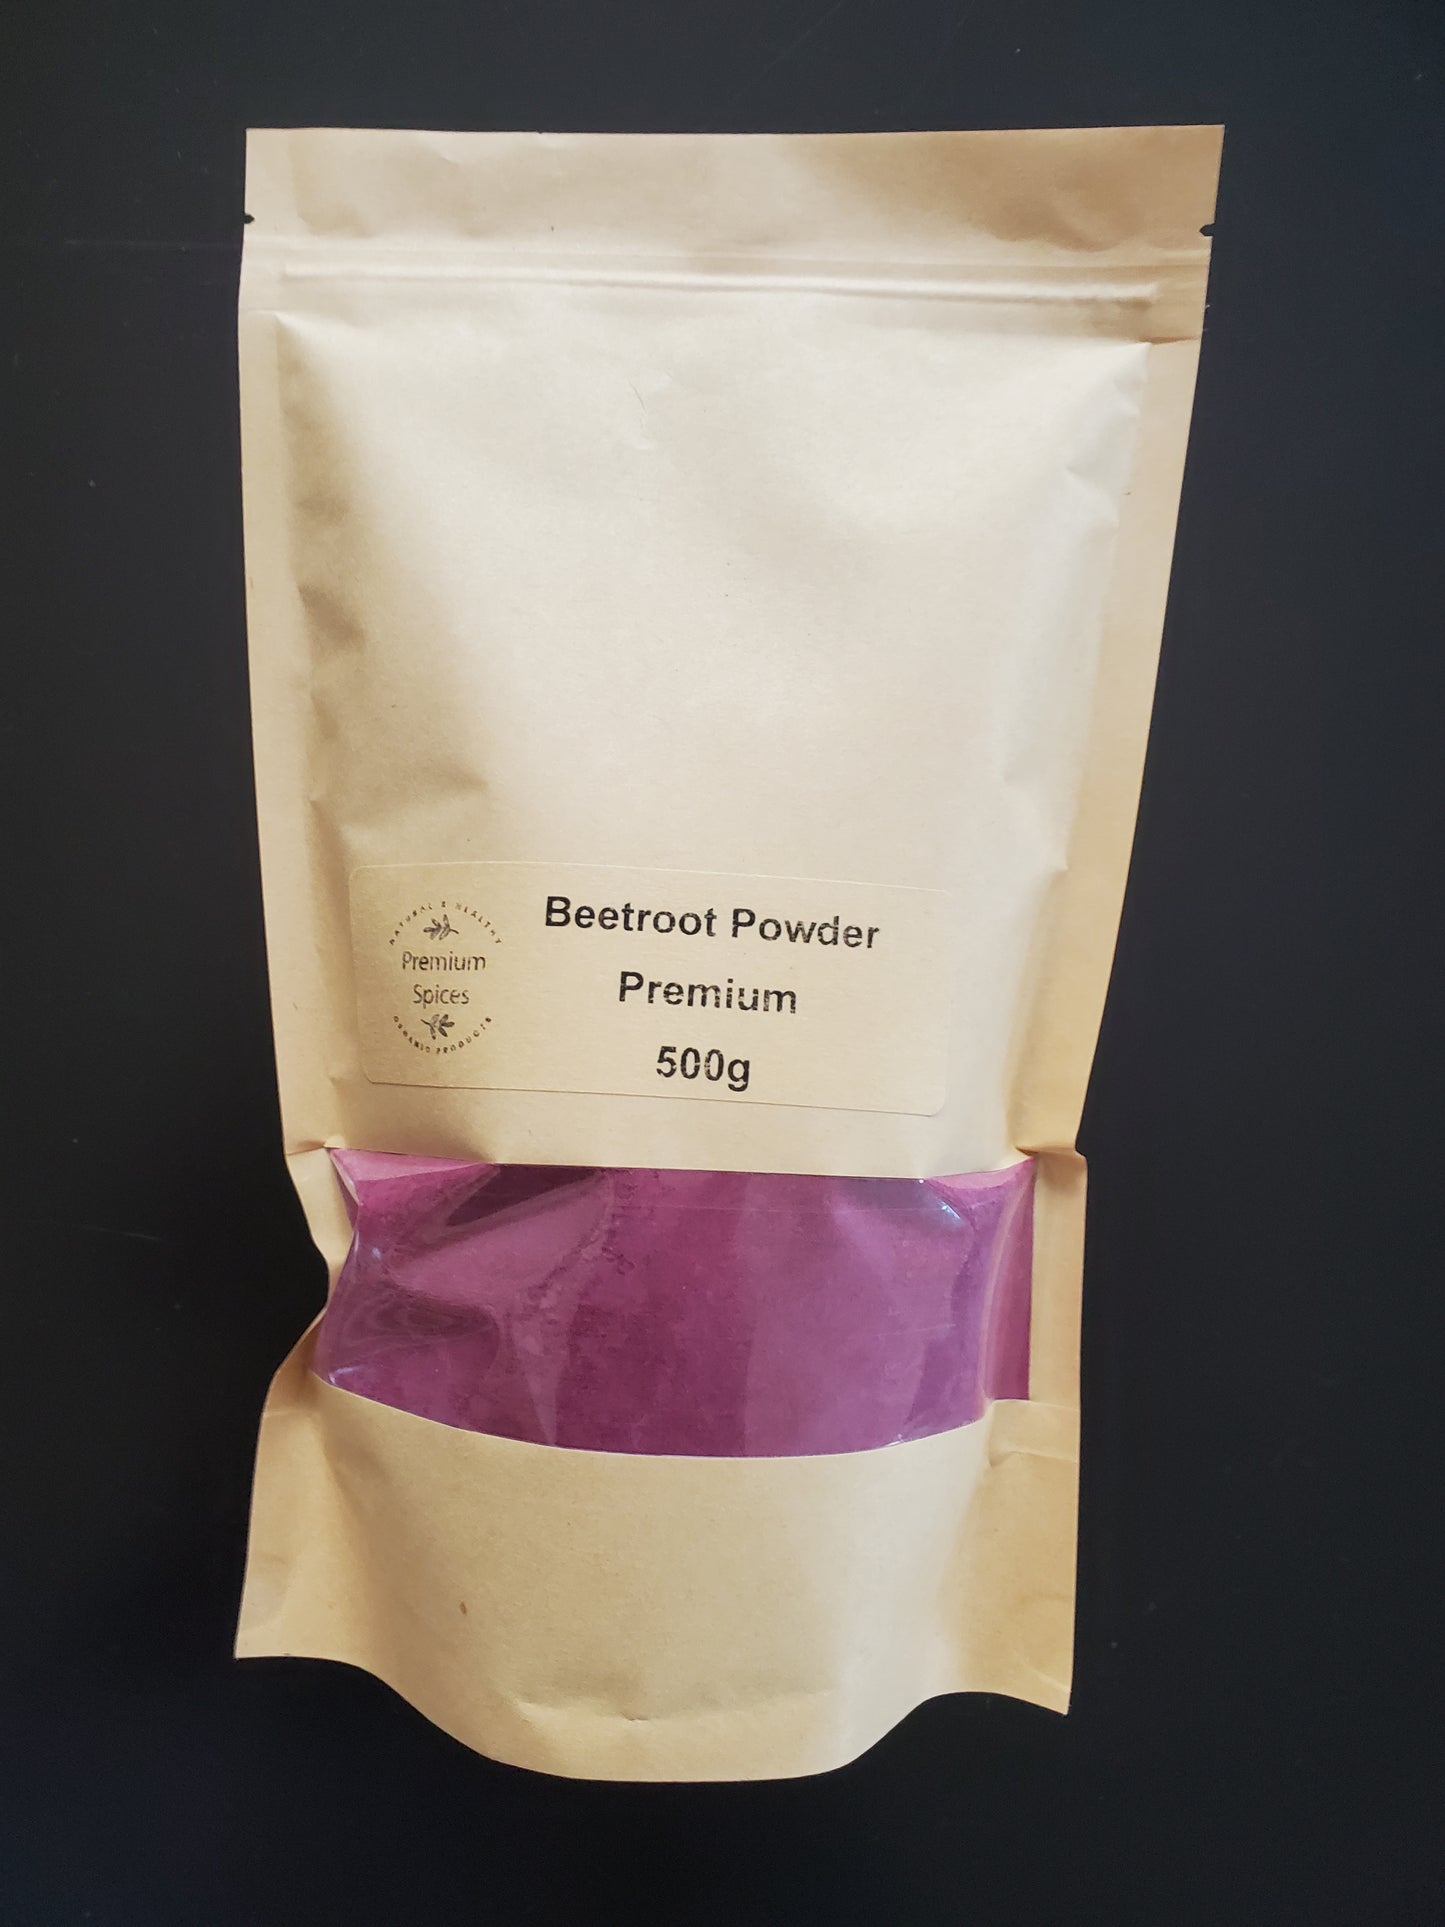 Premium Beetroot Powder NZ